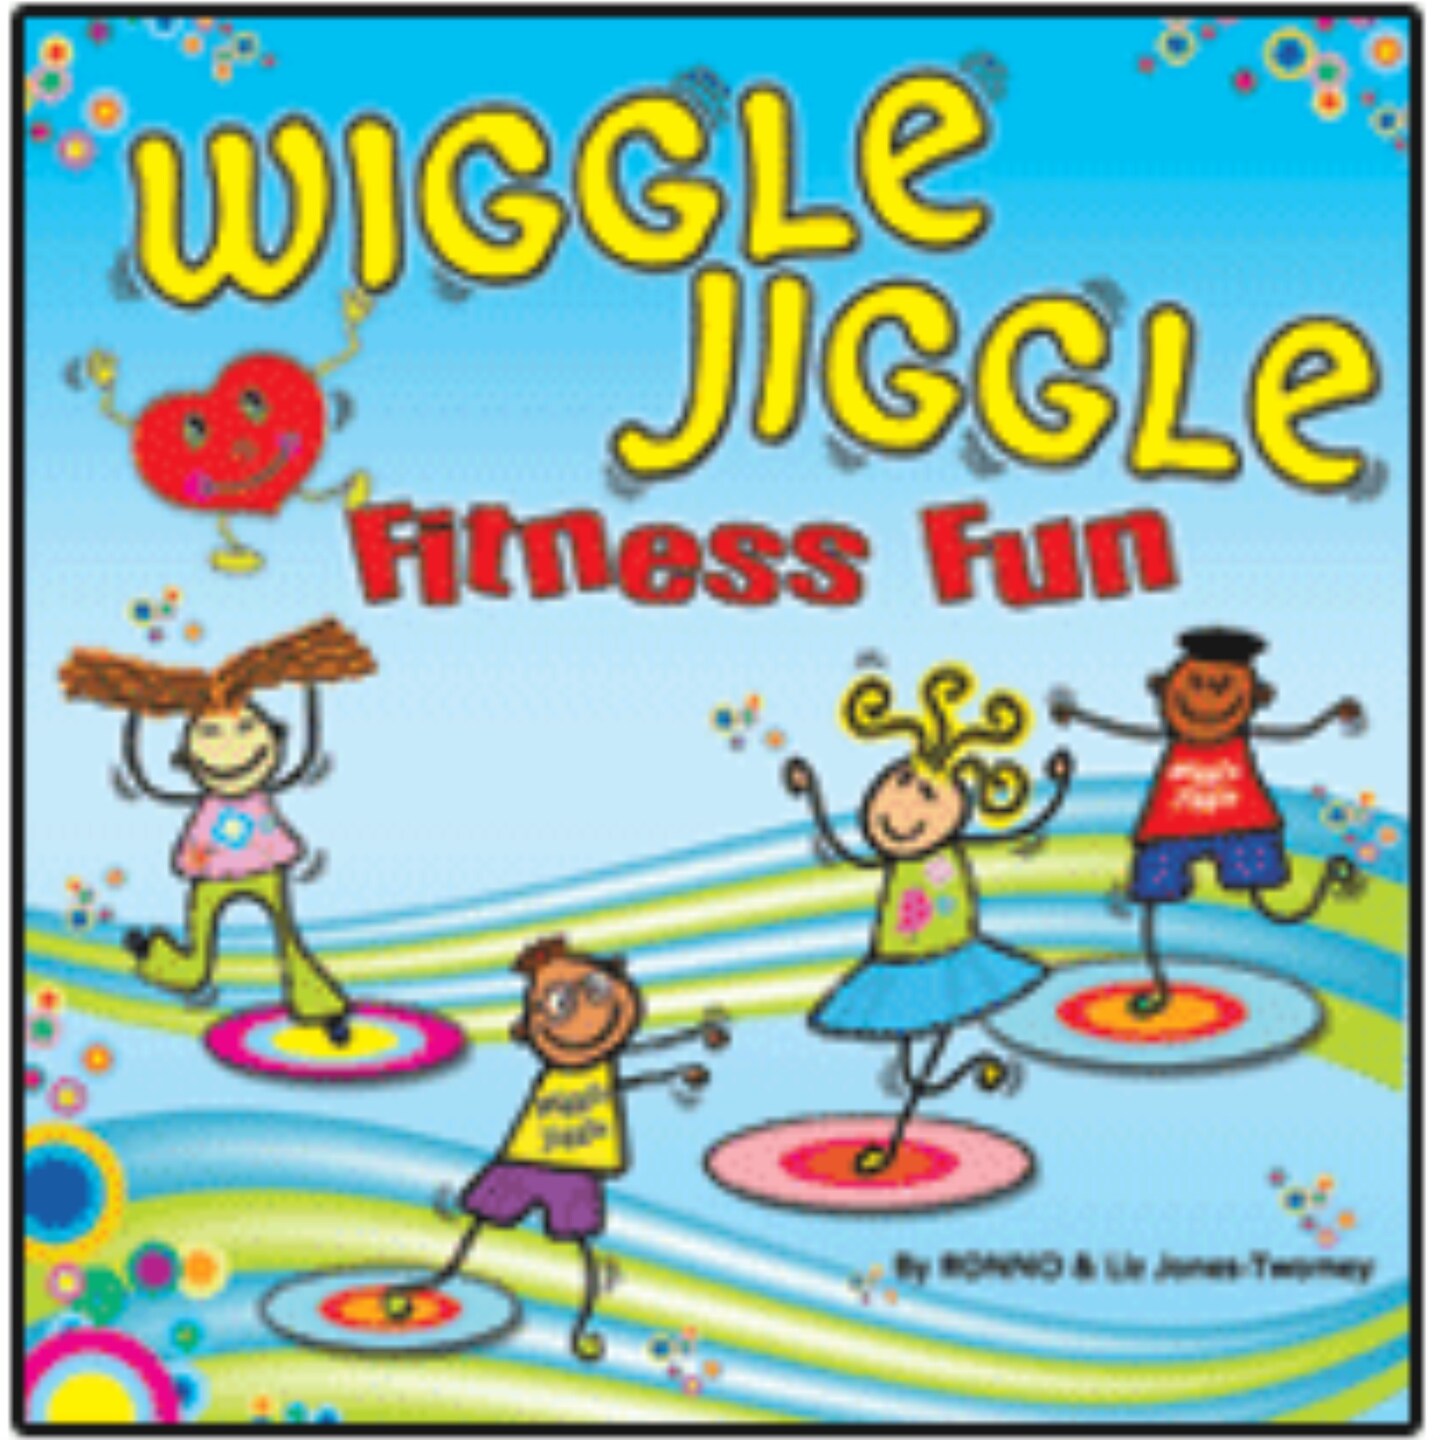 Wiggle, Jiggle Fitness Fun Educational CD